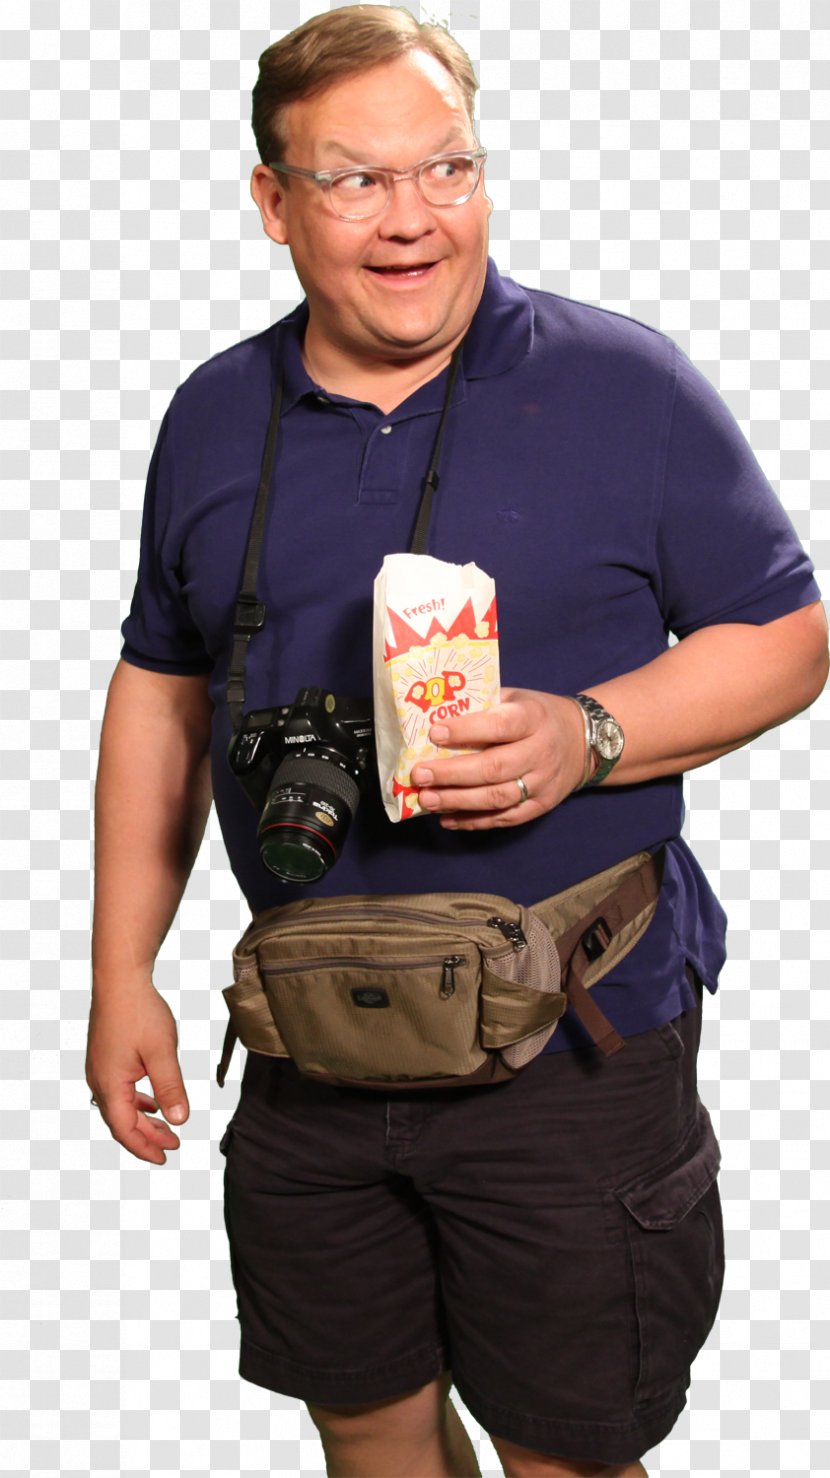 T-shirt Shoulder Bag Abdomen - Eating Popcorn Transparent PNG